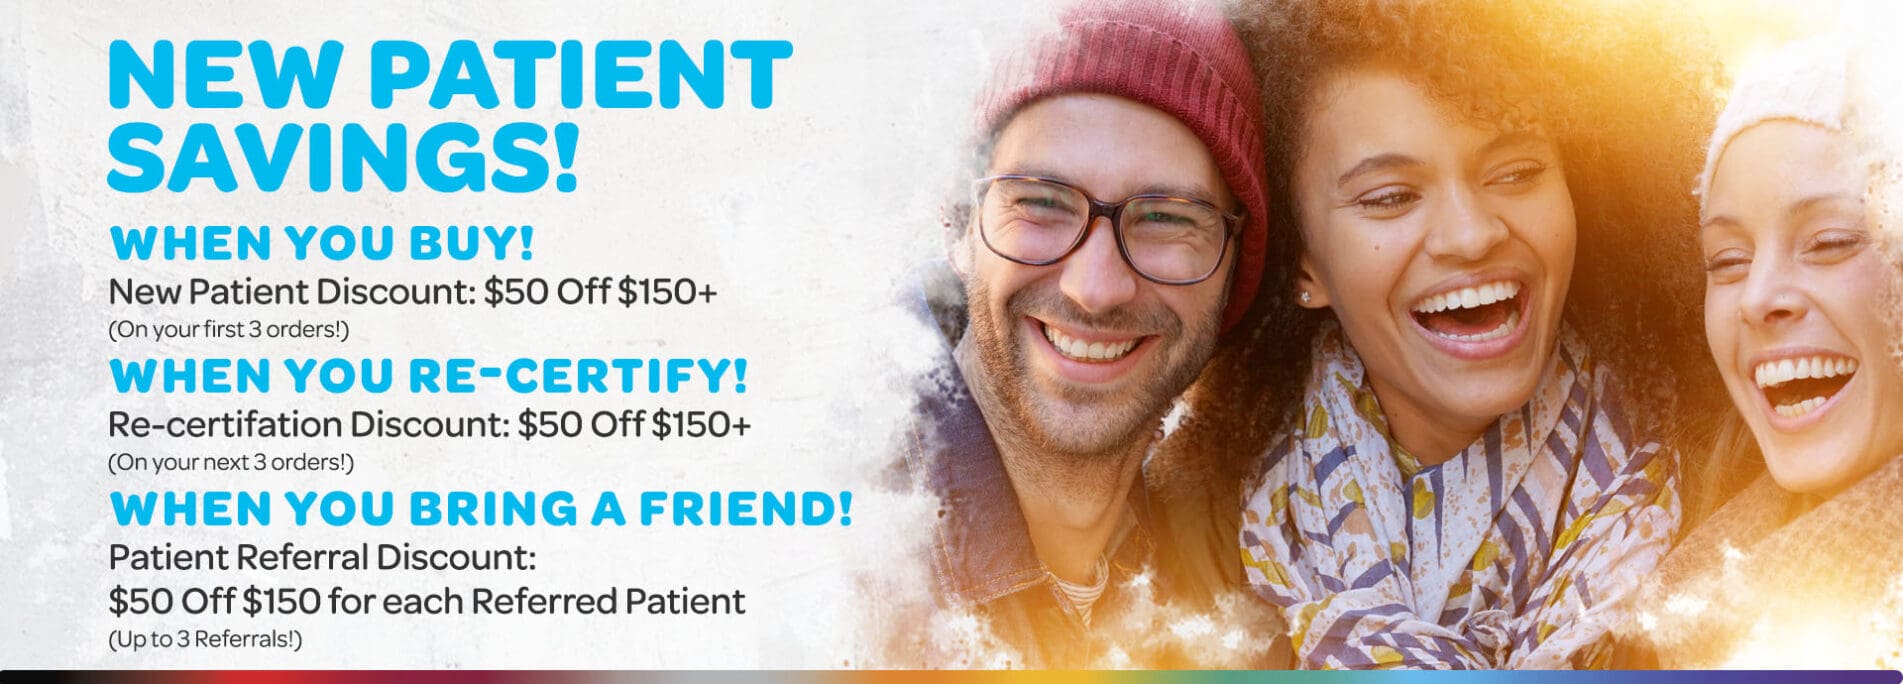 Vireo Health NY - New Patient Discounts